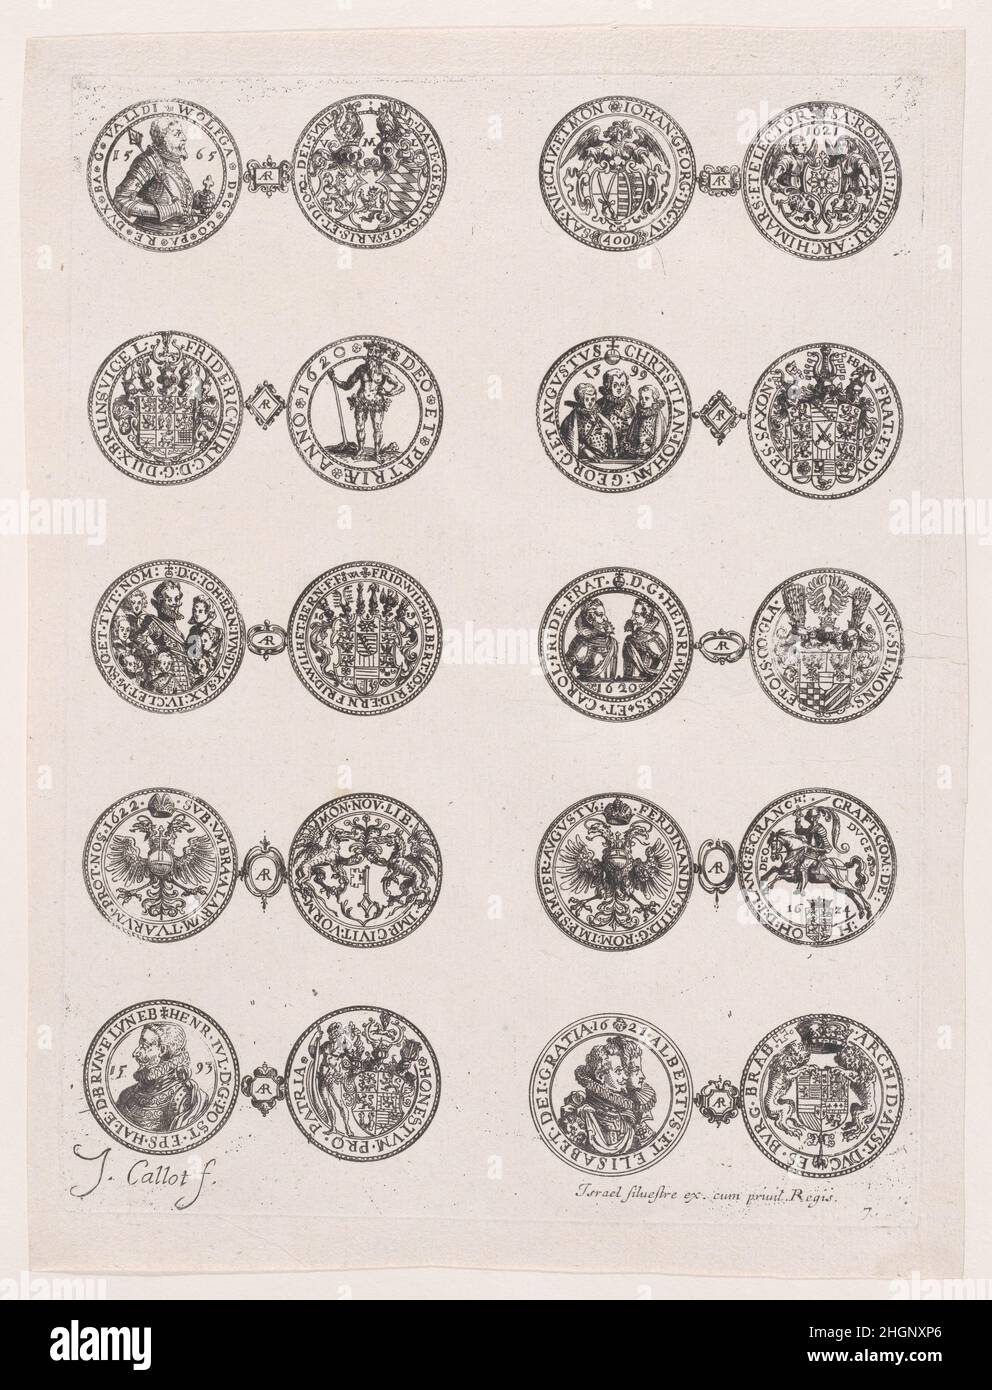 7th plaque, avec 10 pièces émises par les Princes européens aux siècles 16th et 17th, des Monnaies (les monnaies) ca.1630 Jacques Callot Français la série représente les pièces émises par les Princes européens, principalement d'Allemagne et d'Italie, aux siècles 16th et 17th.Cette plaque montre l'avant et l'arrière de 10 pièces.Ces pièces sont des portraits de princes ou d'emblèmes européens et sont reliées par une cartouche avec l'inscription 'AR' (argentum).7th plaque, avec 10 pièces émises par les Princes européens aux siècles 16th et 17th, des Monnaies (les monnaies).Les Monnaies.Jacques Cal Banque D'Images